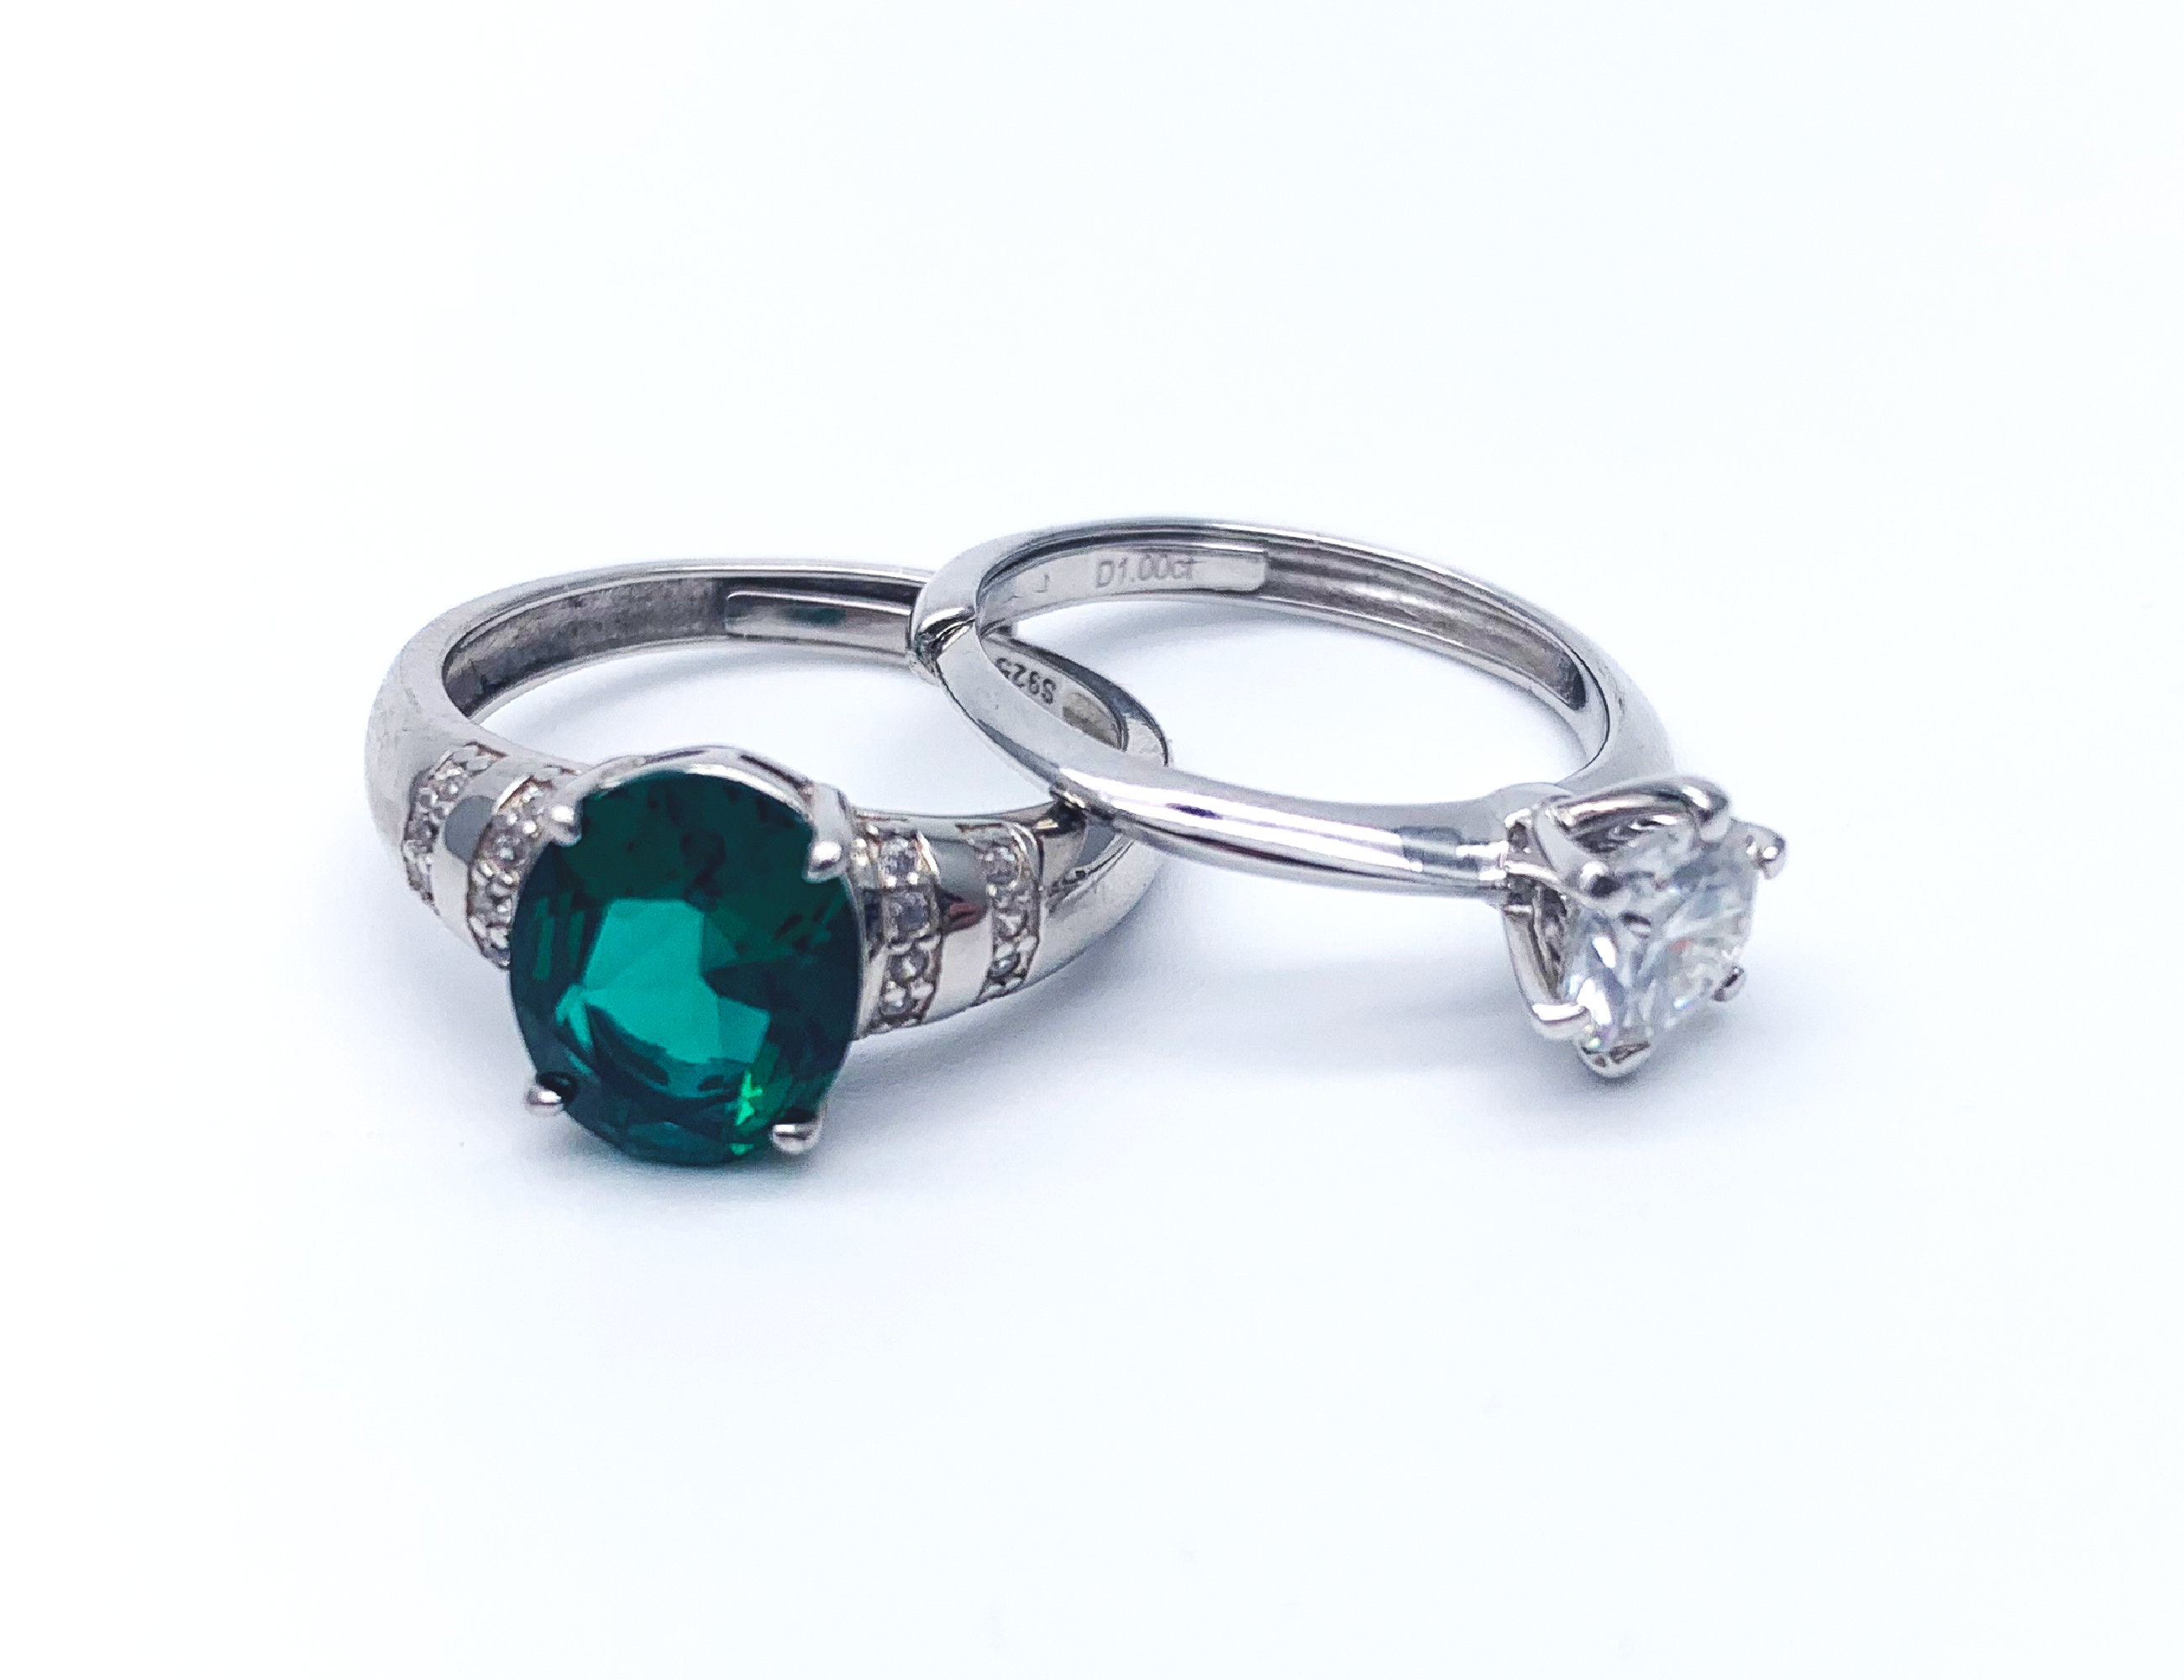 Fashion Wedding Engagement Proposal Diamond Ring, One Size Adjustable ...